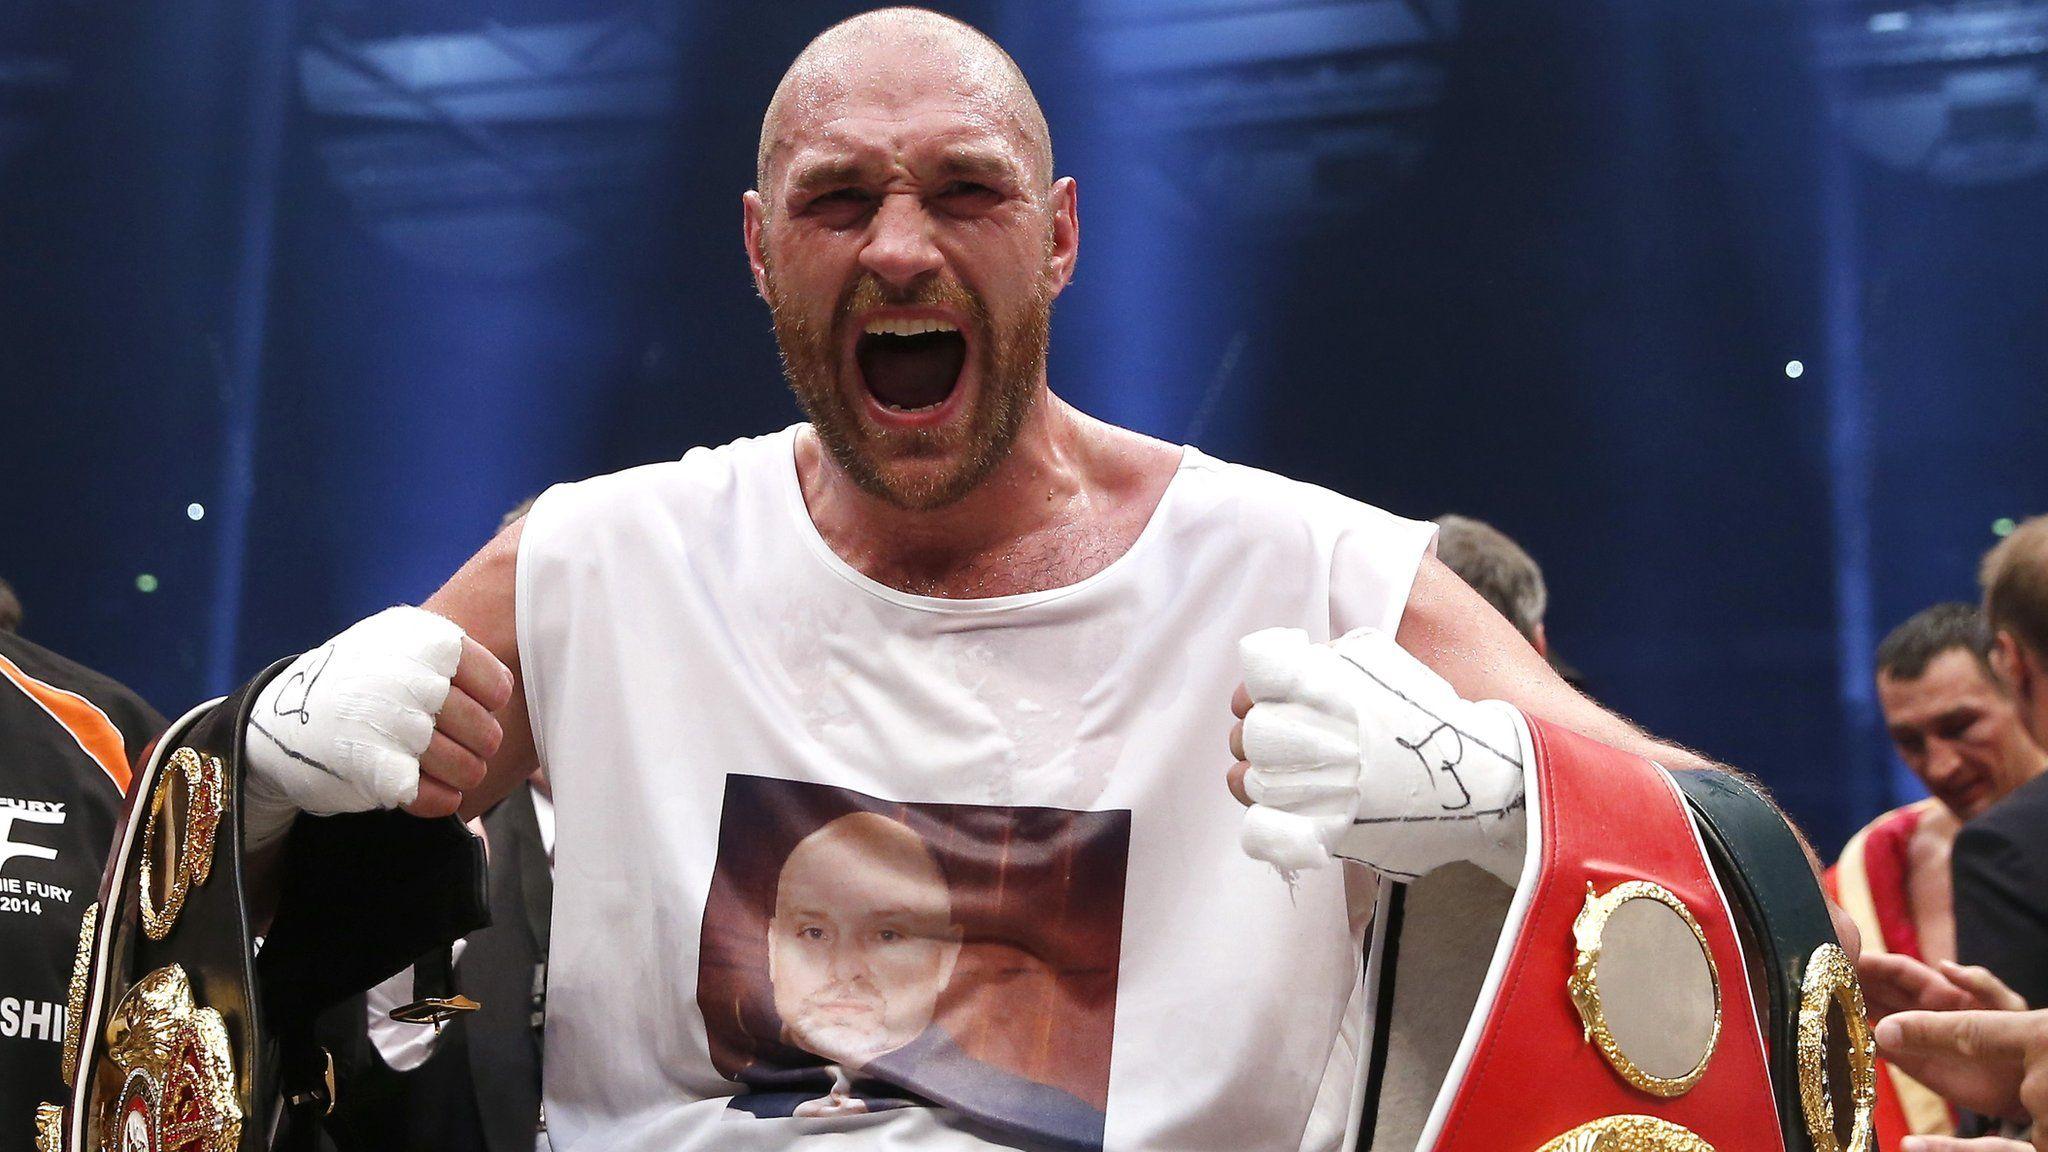 Tyson Fury becomes world heavyweight boxing champion